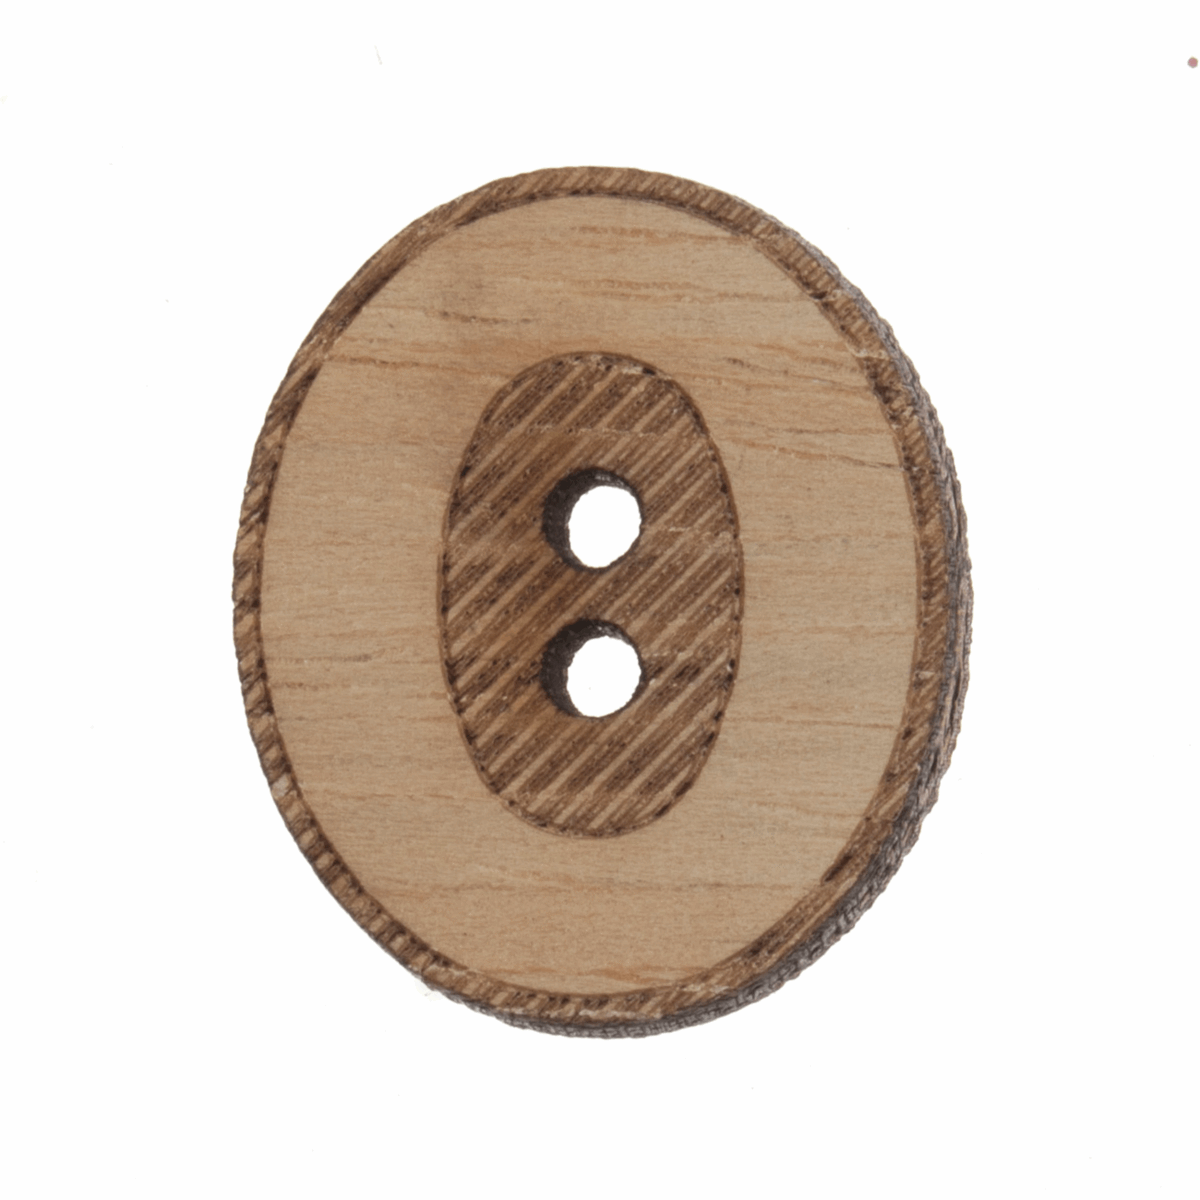 Trimits Wooden Number Button (0) - 22mm/35 lignes